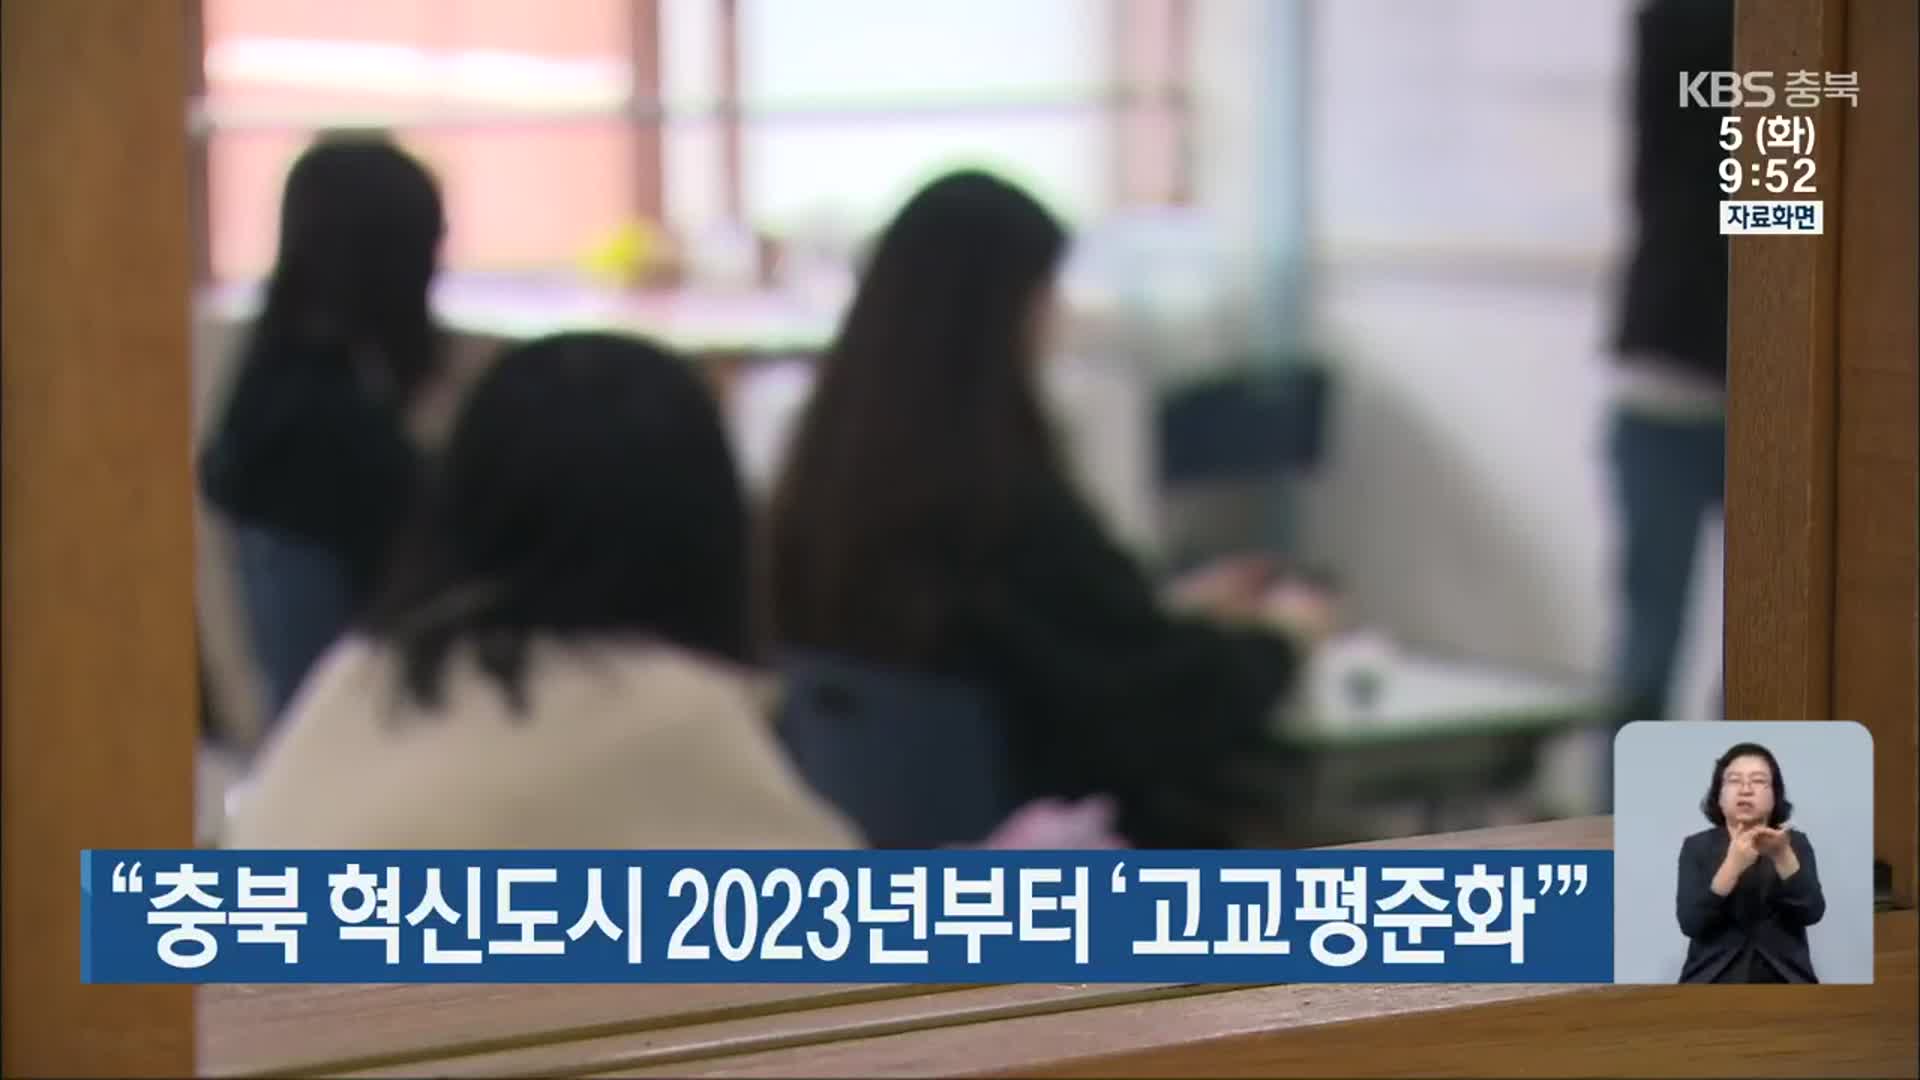 “충북 혁신도시 2023년부터 ‘고교평준화’”